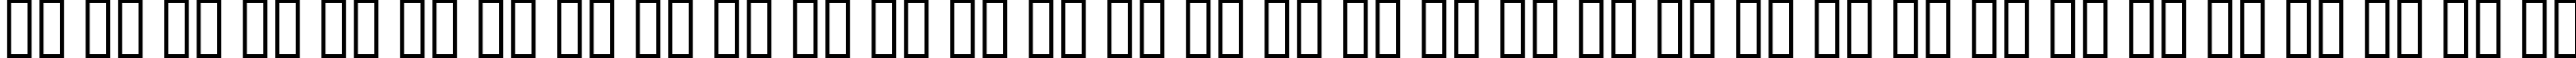 Пример написания русского алфавита шрифтом Carpenter Script